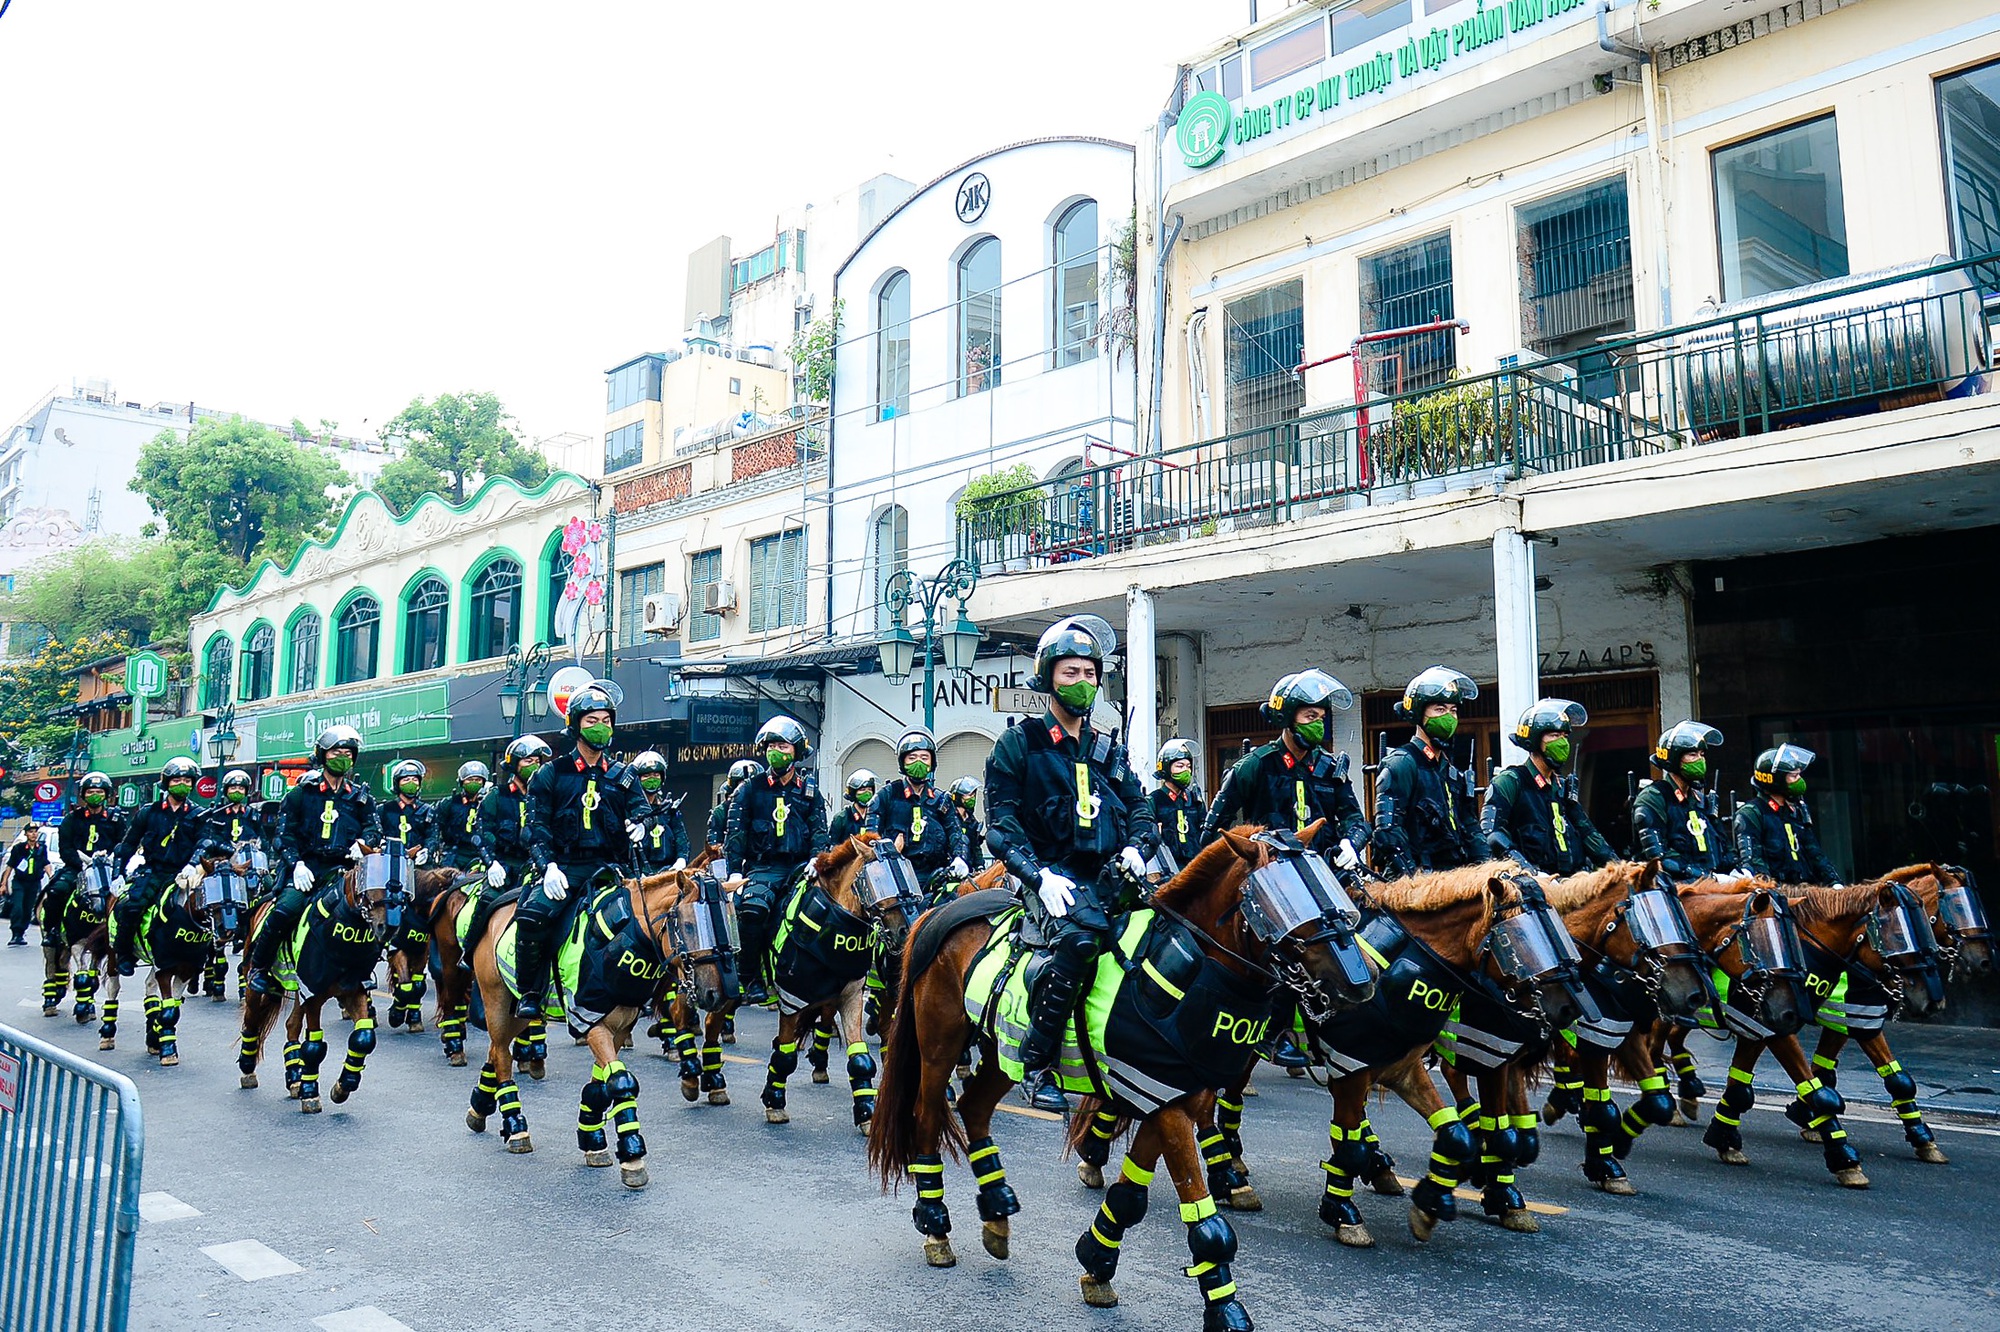 Mãn nhãn dàn kỵ binh diễu hành trên phố Hà Nội - Ảnh 7.